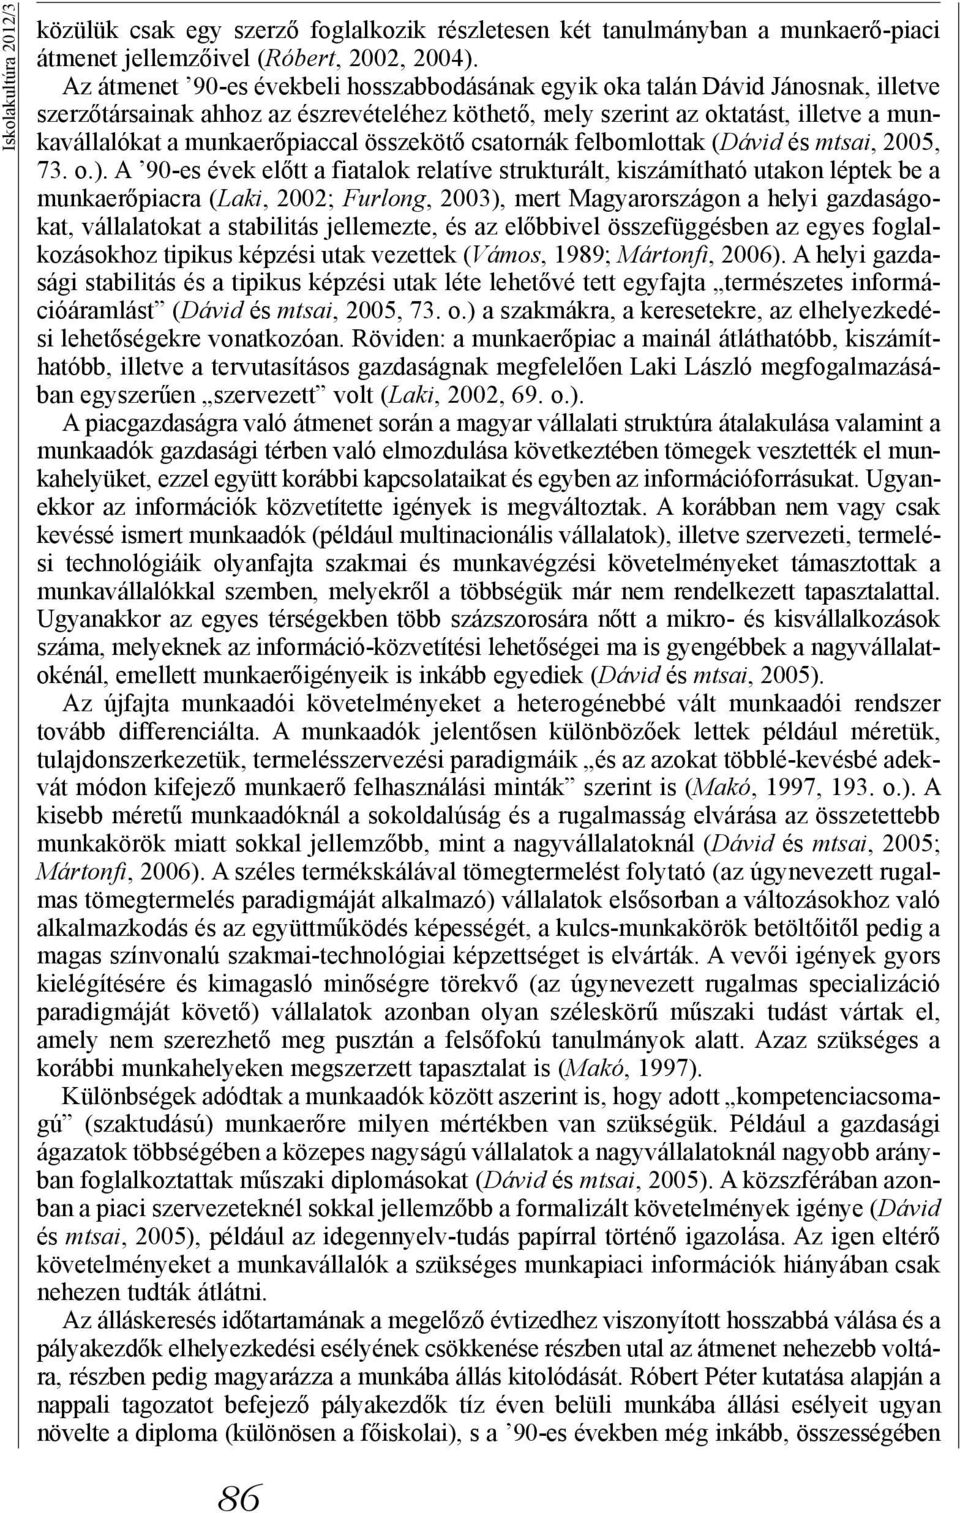 munkaerőpiaccal összekötő csatornák felbomlottak (Dávid és mtsai, 2005, 73. o.).